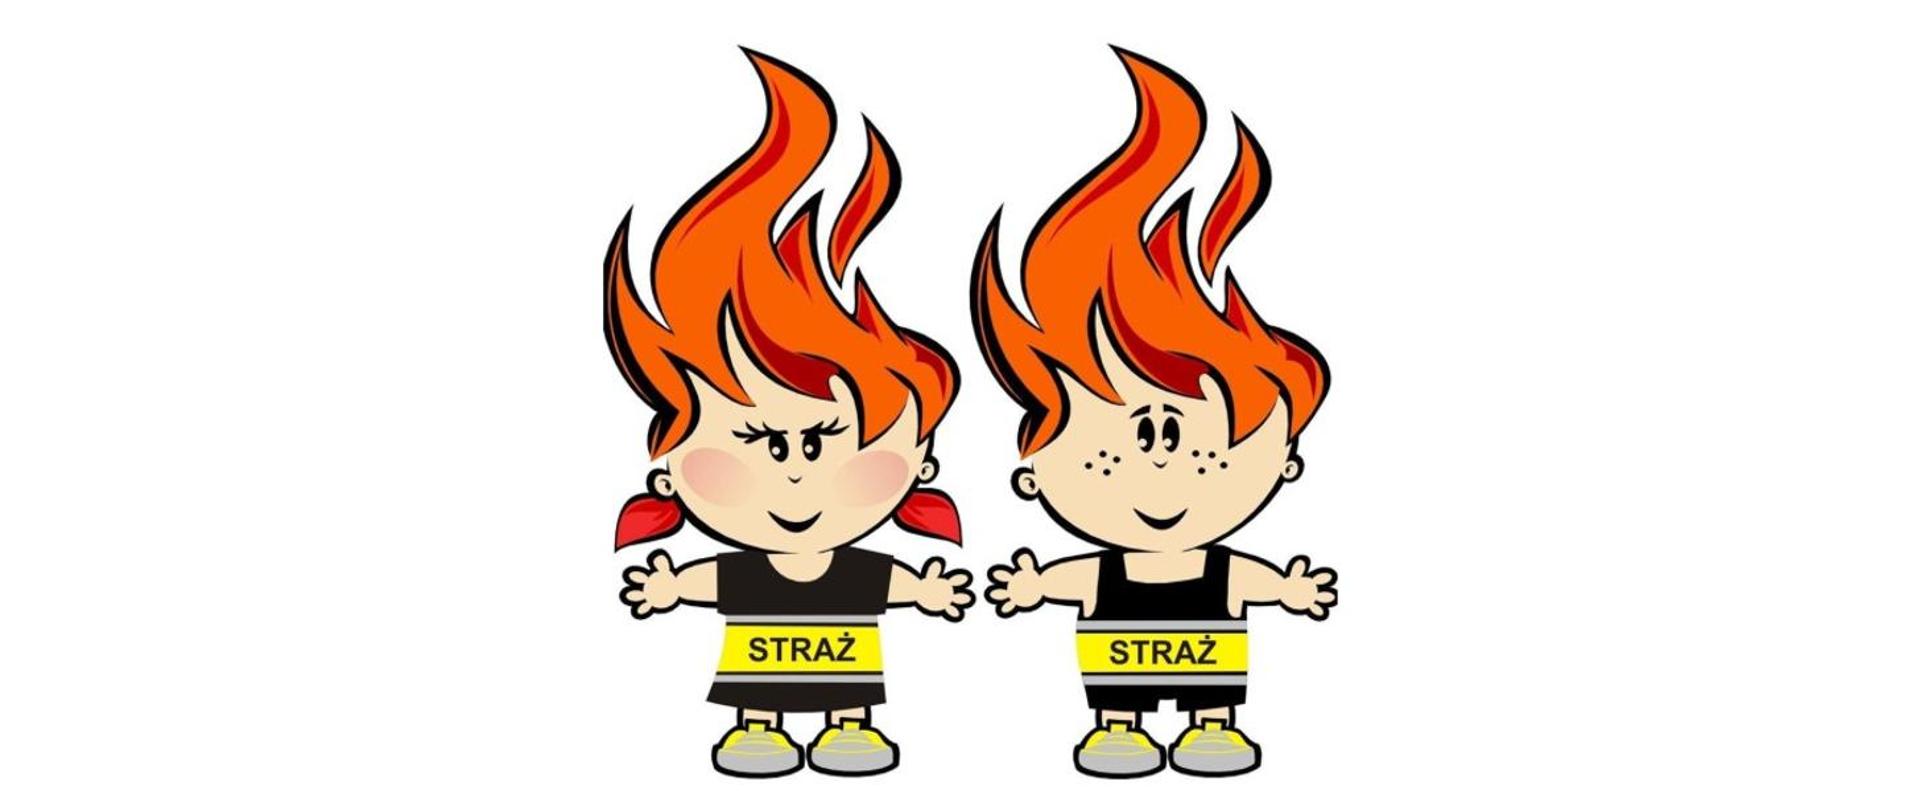 Na zdjęciu ukazuje się logo chłopczyka i dziewczynki z prewencji społecznej